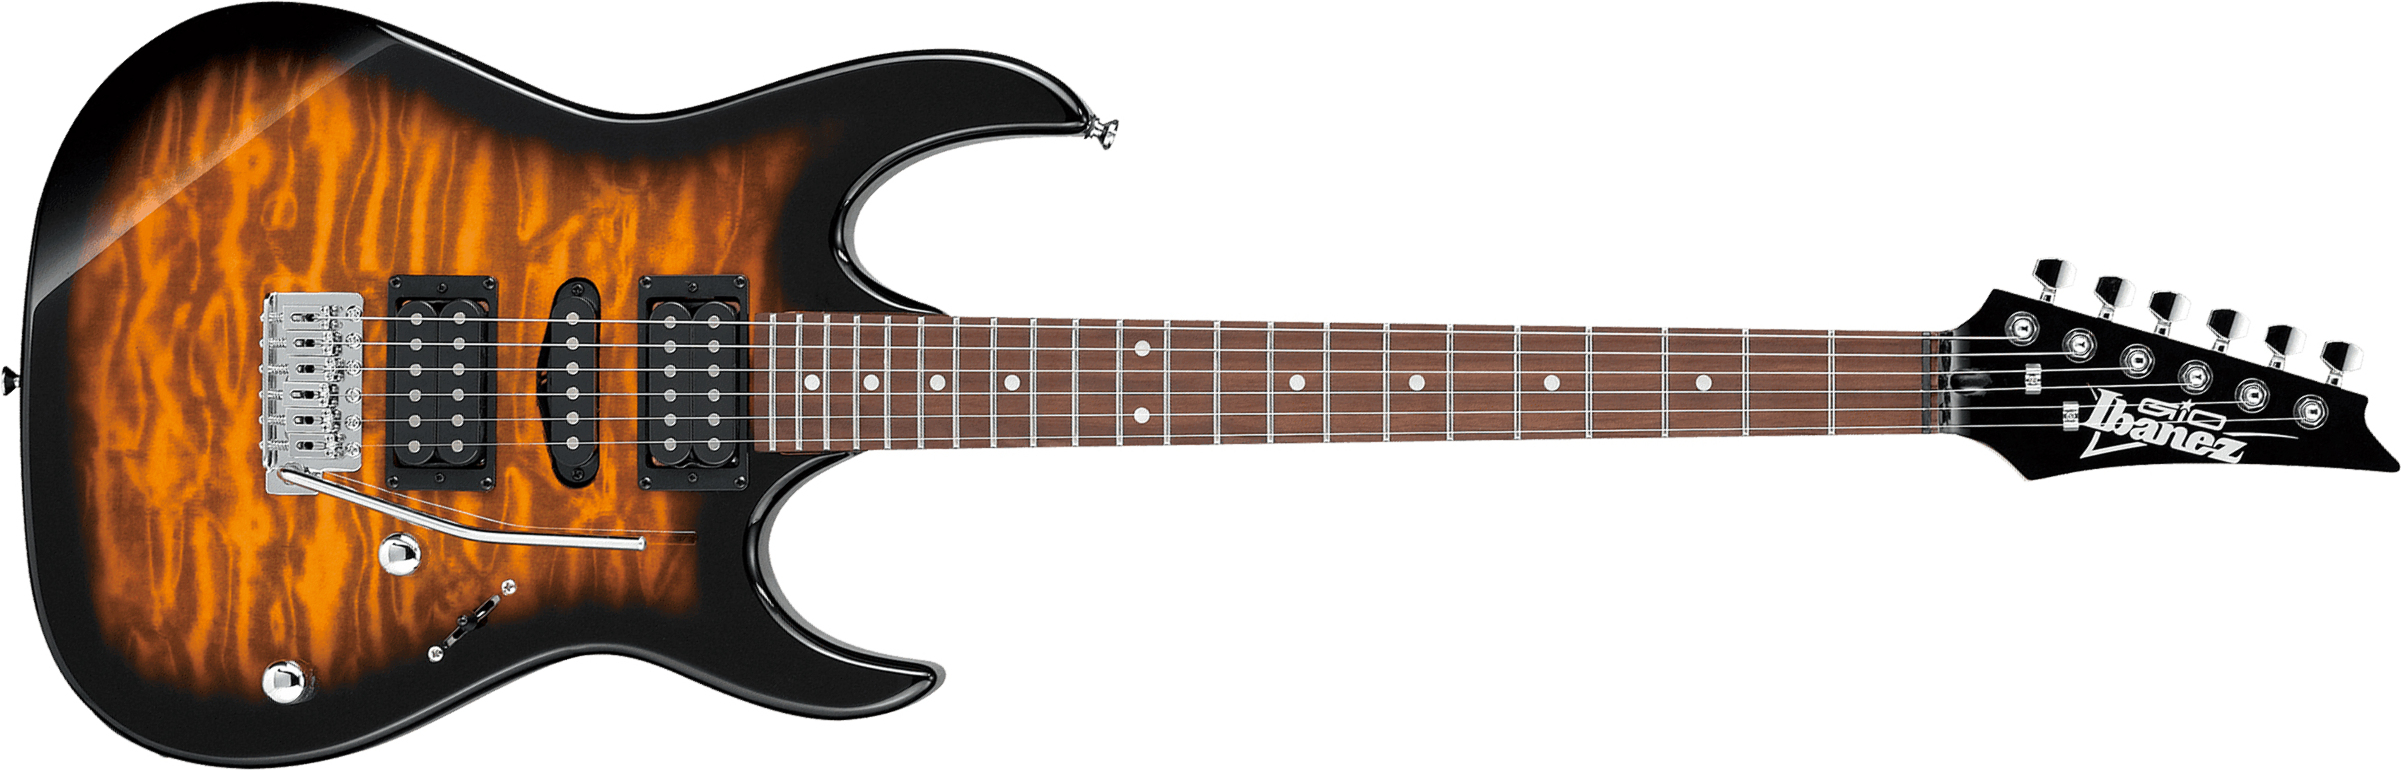 Ibanez Grx70qa Sb Gio Hsh Trem Nzp - Sunburst - Elektrische gitaar in Str-vorm - Main picture